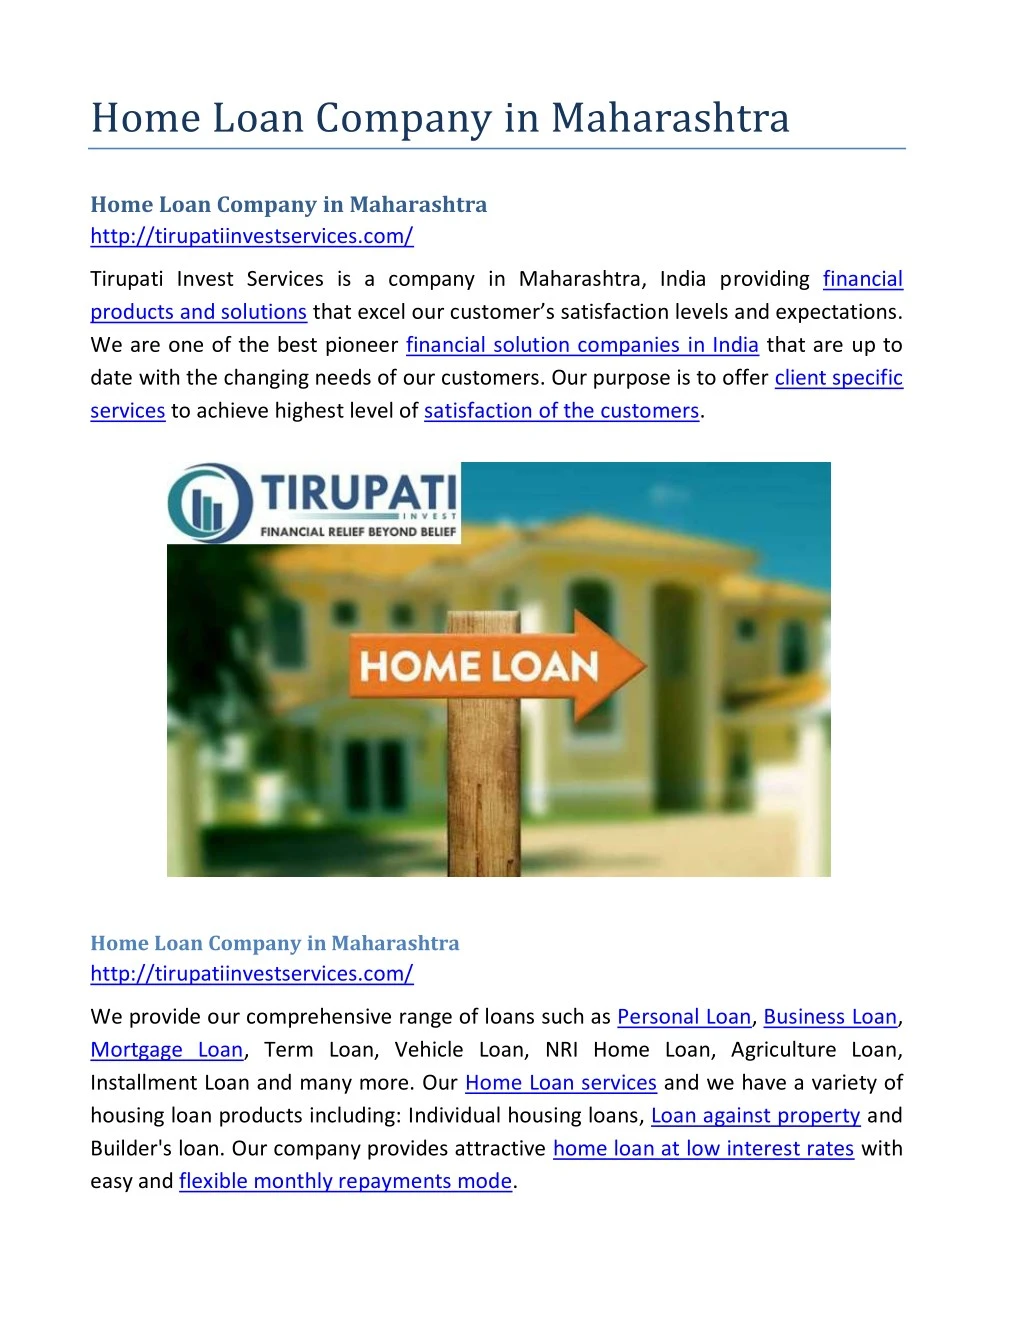 home loan company in maharashtra